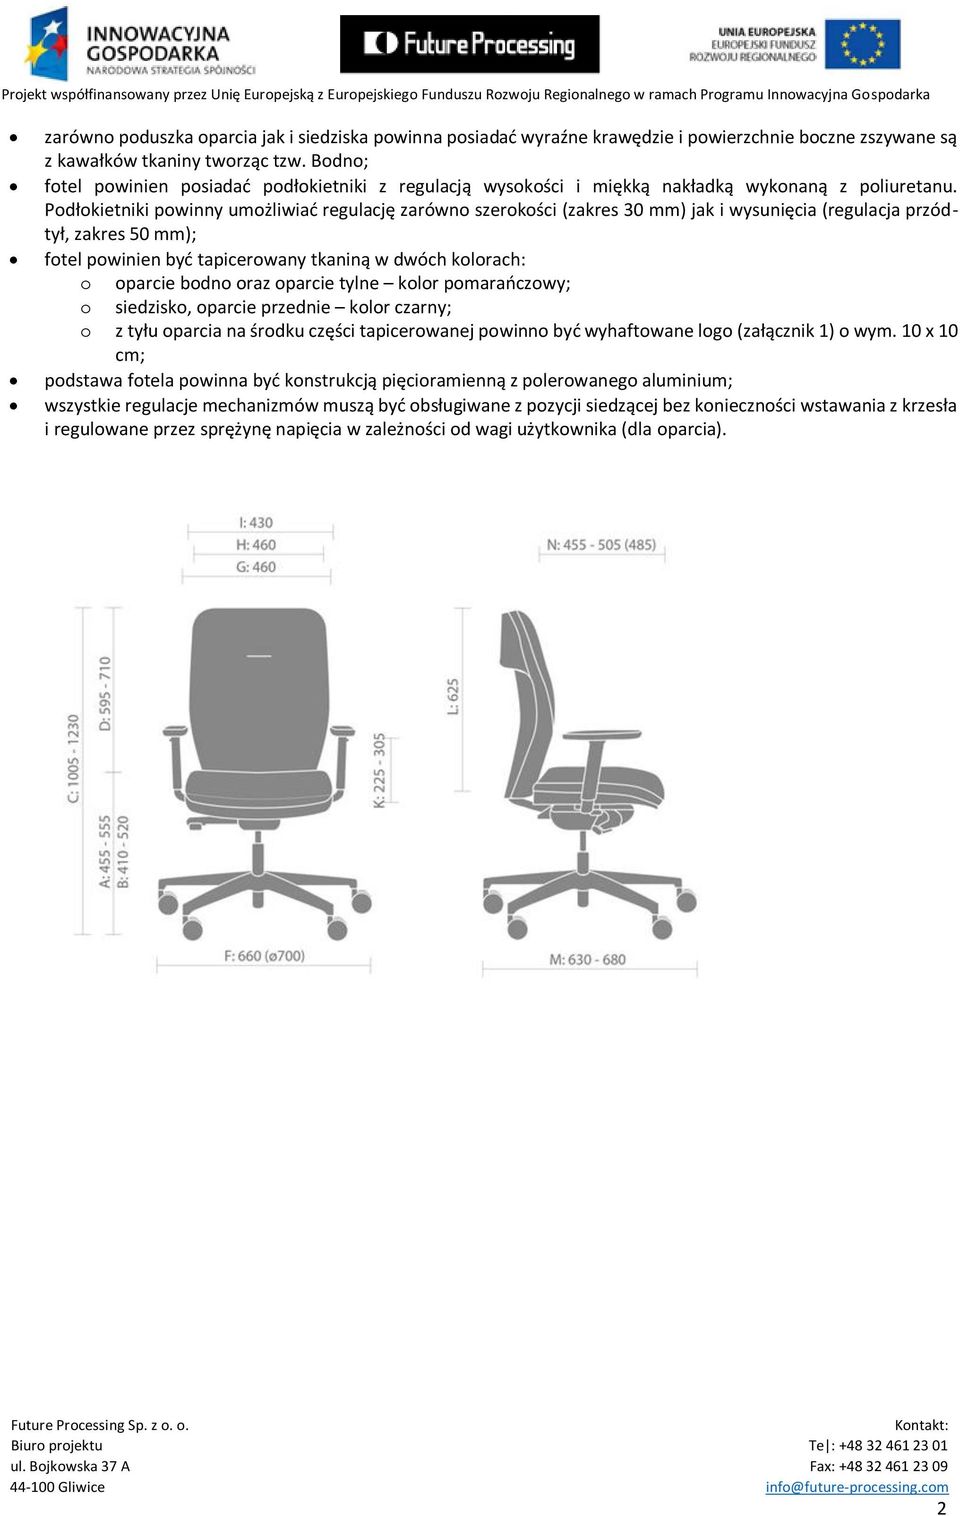 Podłokietniki powinny umożliwiać regulację zarówno szerokości (zakres 30 mm) jak i wysunięcia (regulacja przódtył, zakres 50 mm); fotel powinien być tapicerowany tkaniną w dwóch kolorach: o oparcie